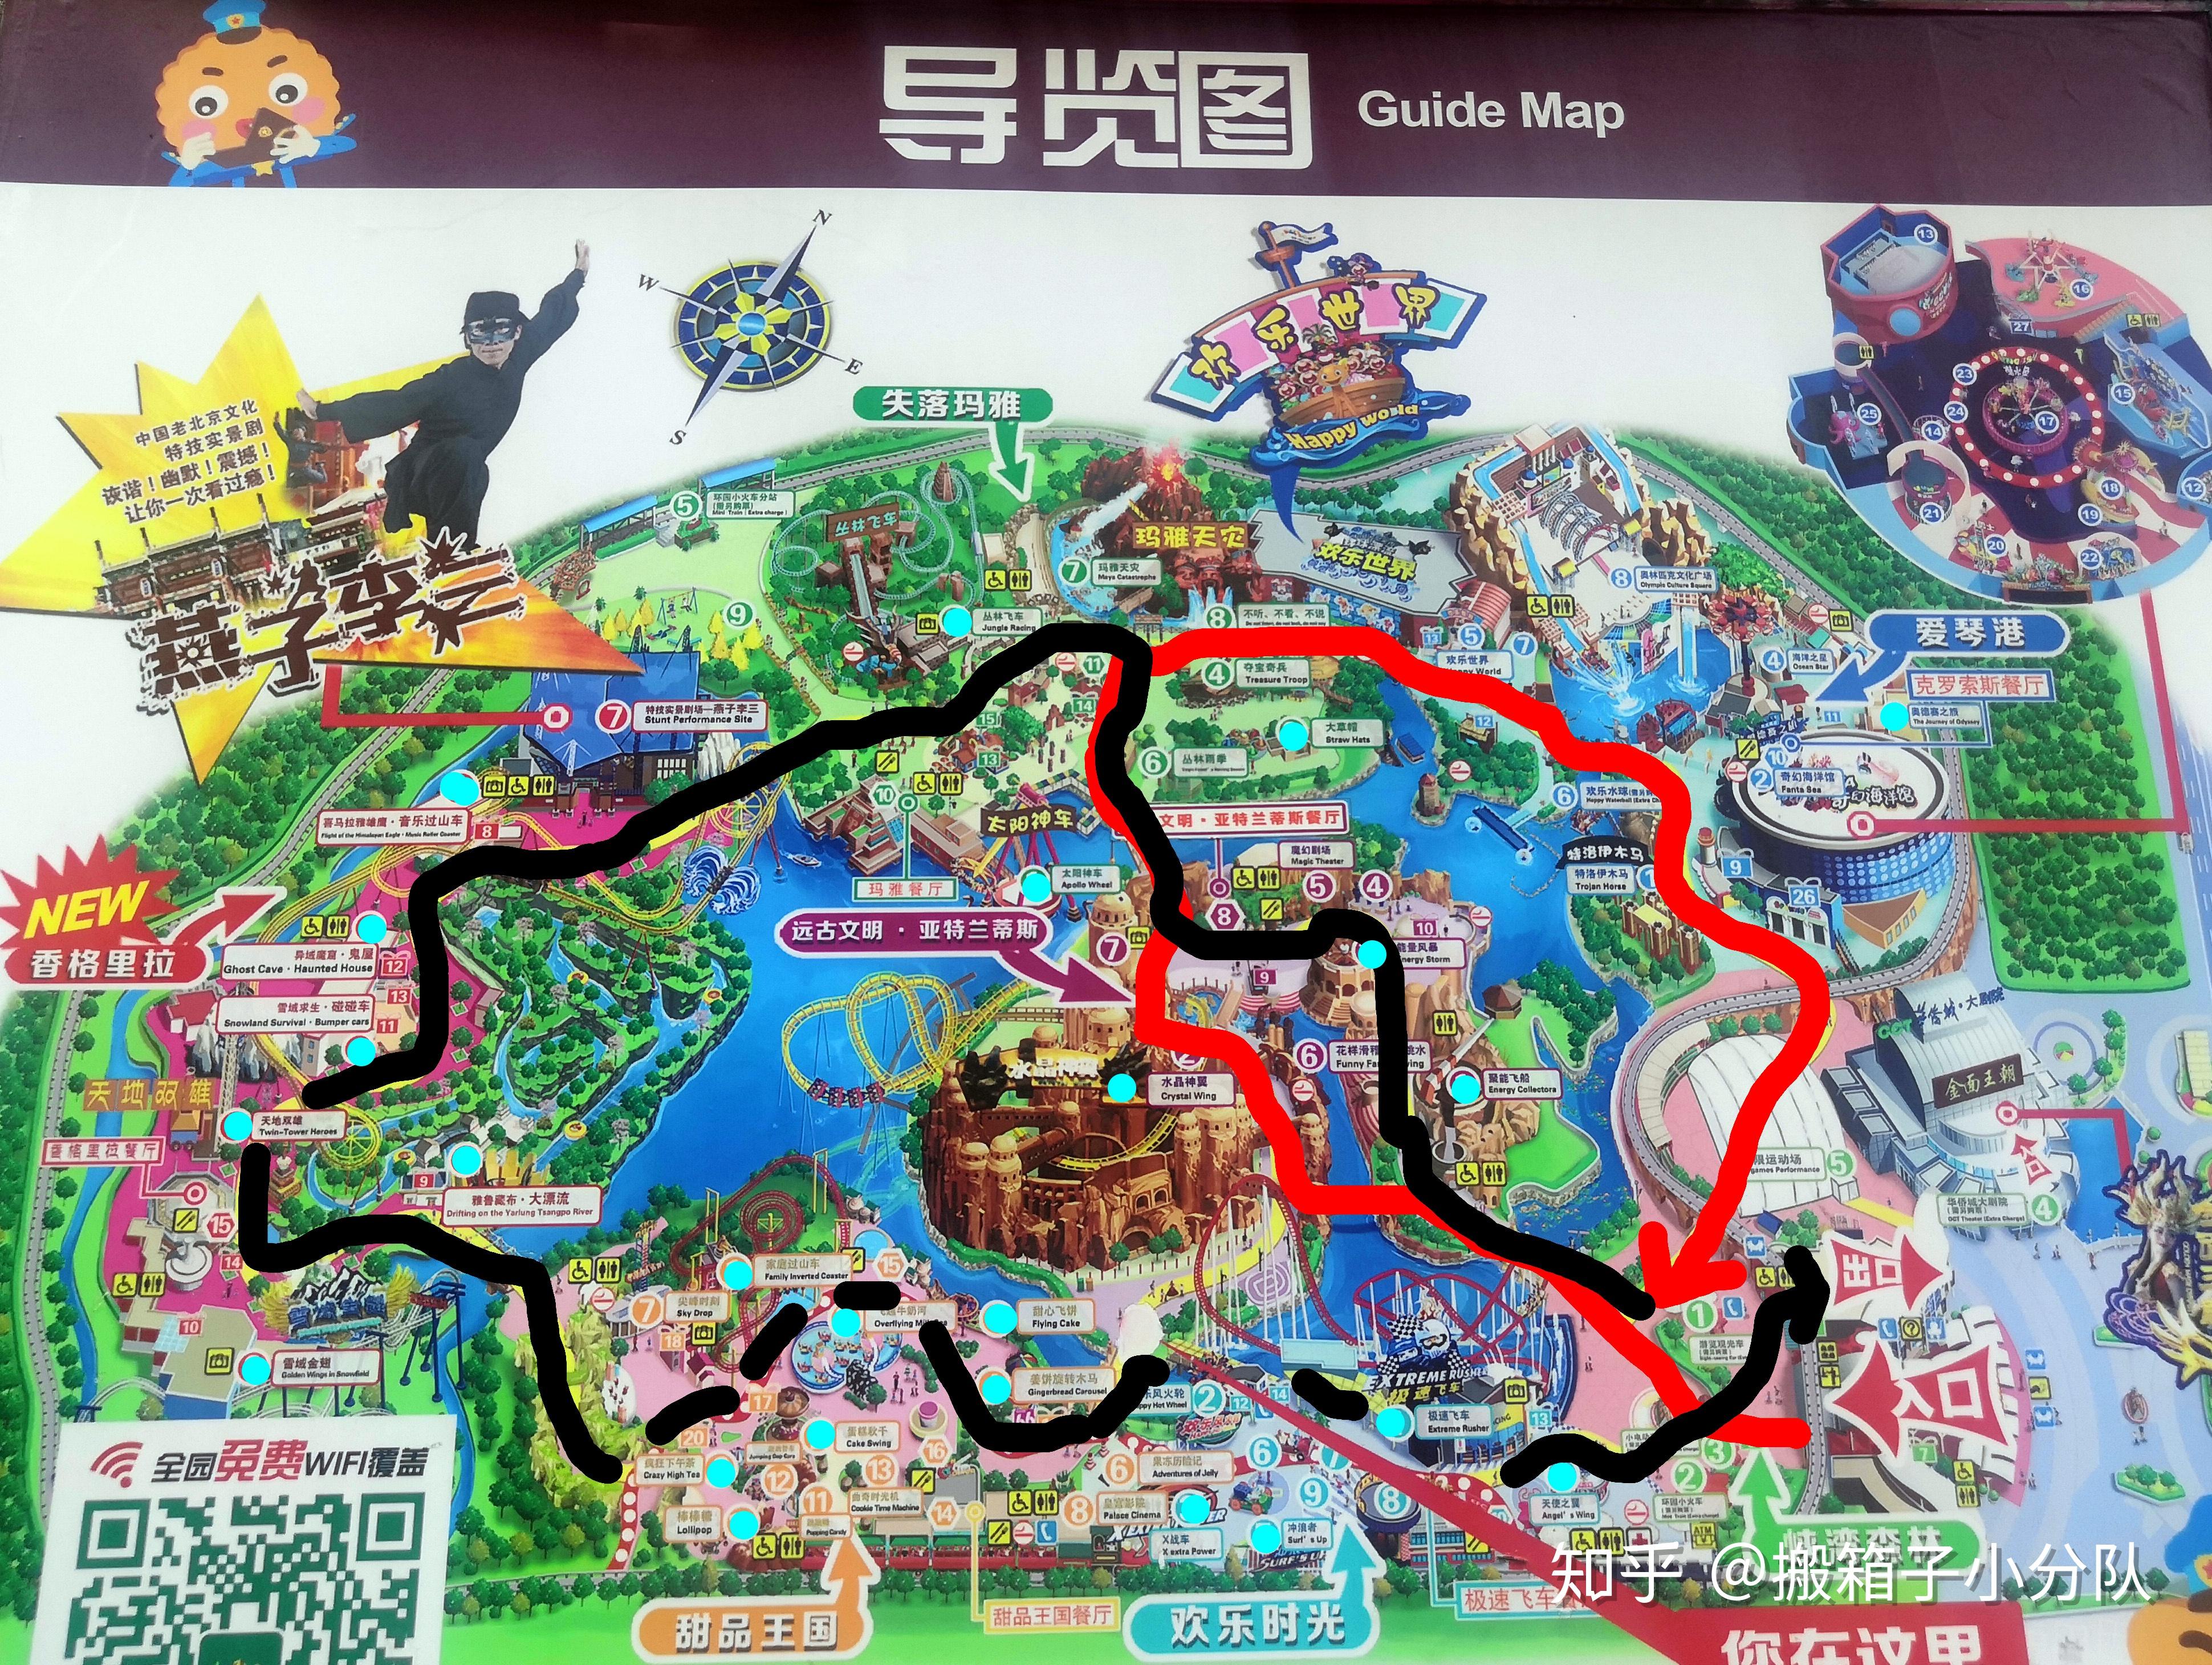 北京欢乐谷的最好游玩攻略是什么？怎样玩才能在一天内玩最多的项目？ - 知乎